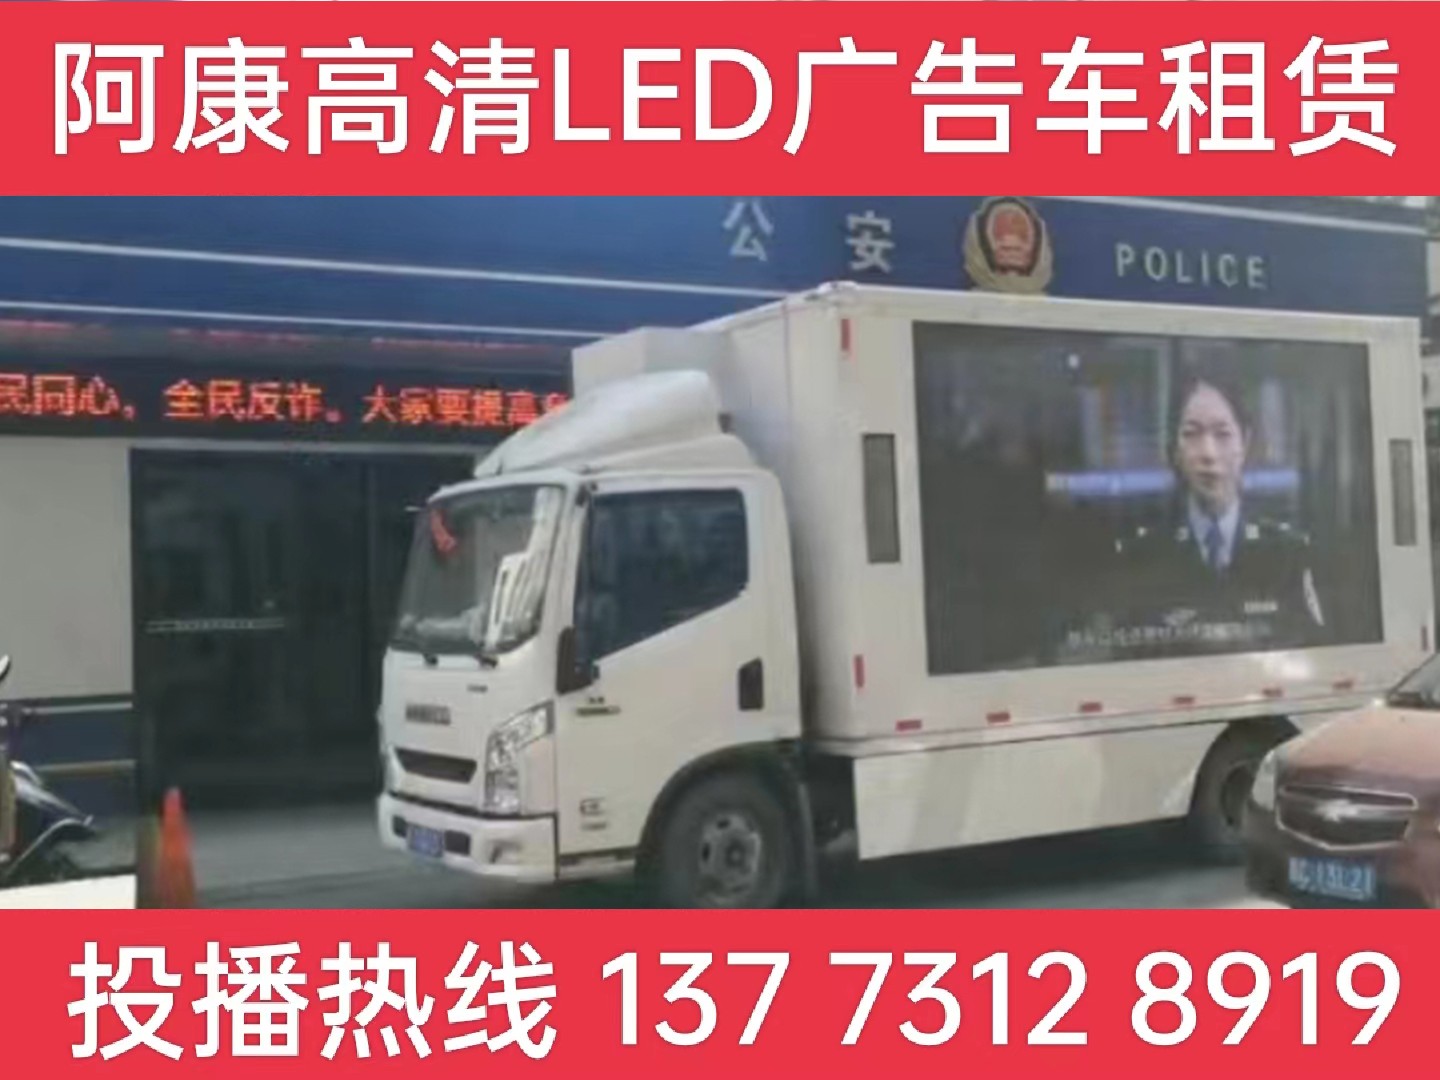 江宁区LED广告车租赁-反诈宣传